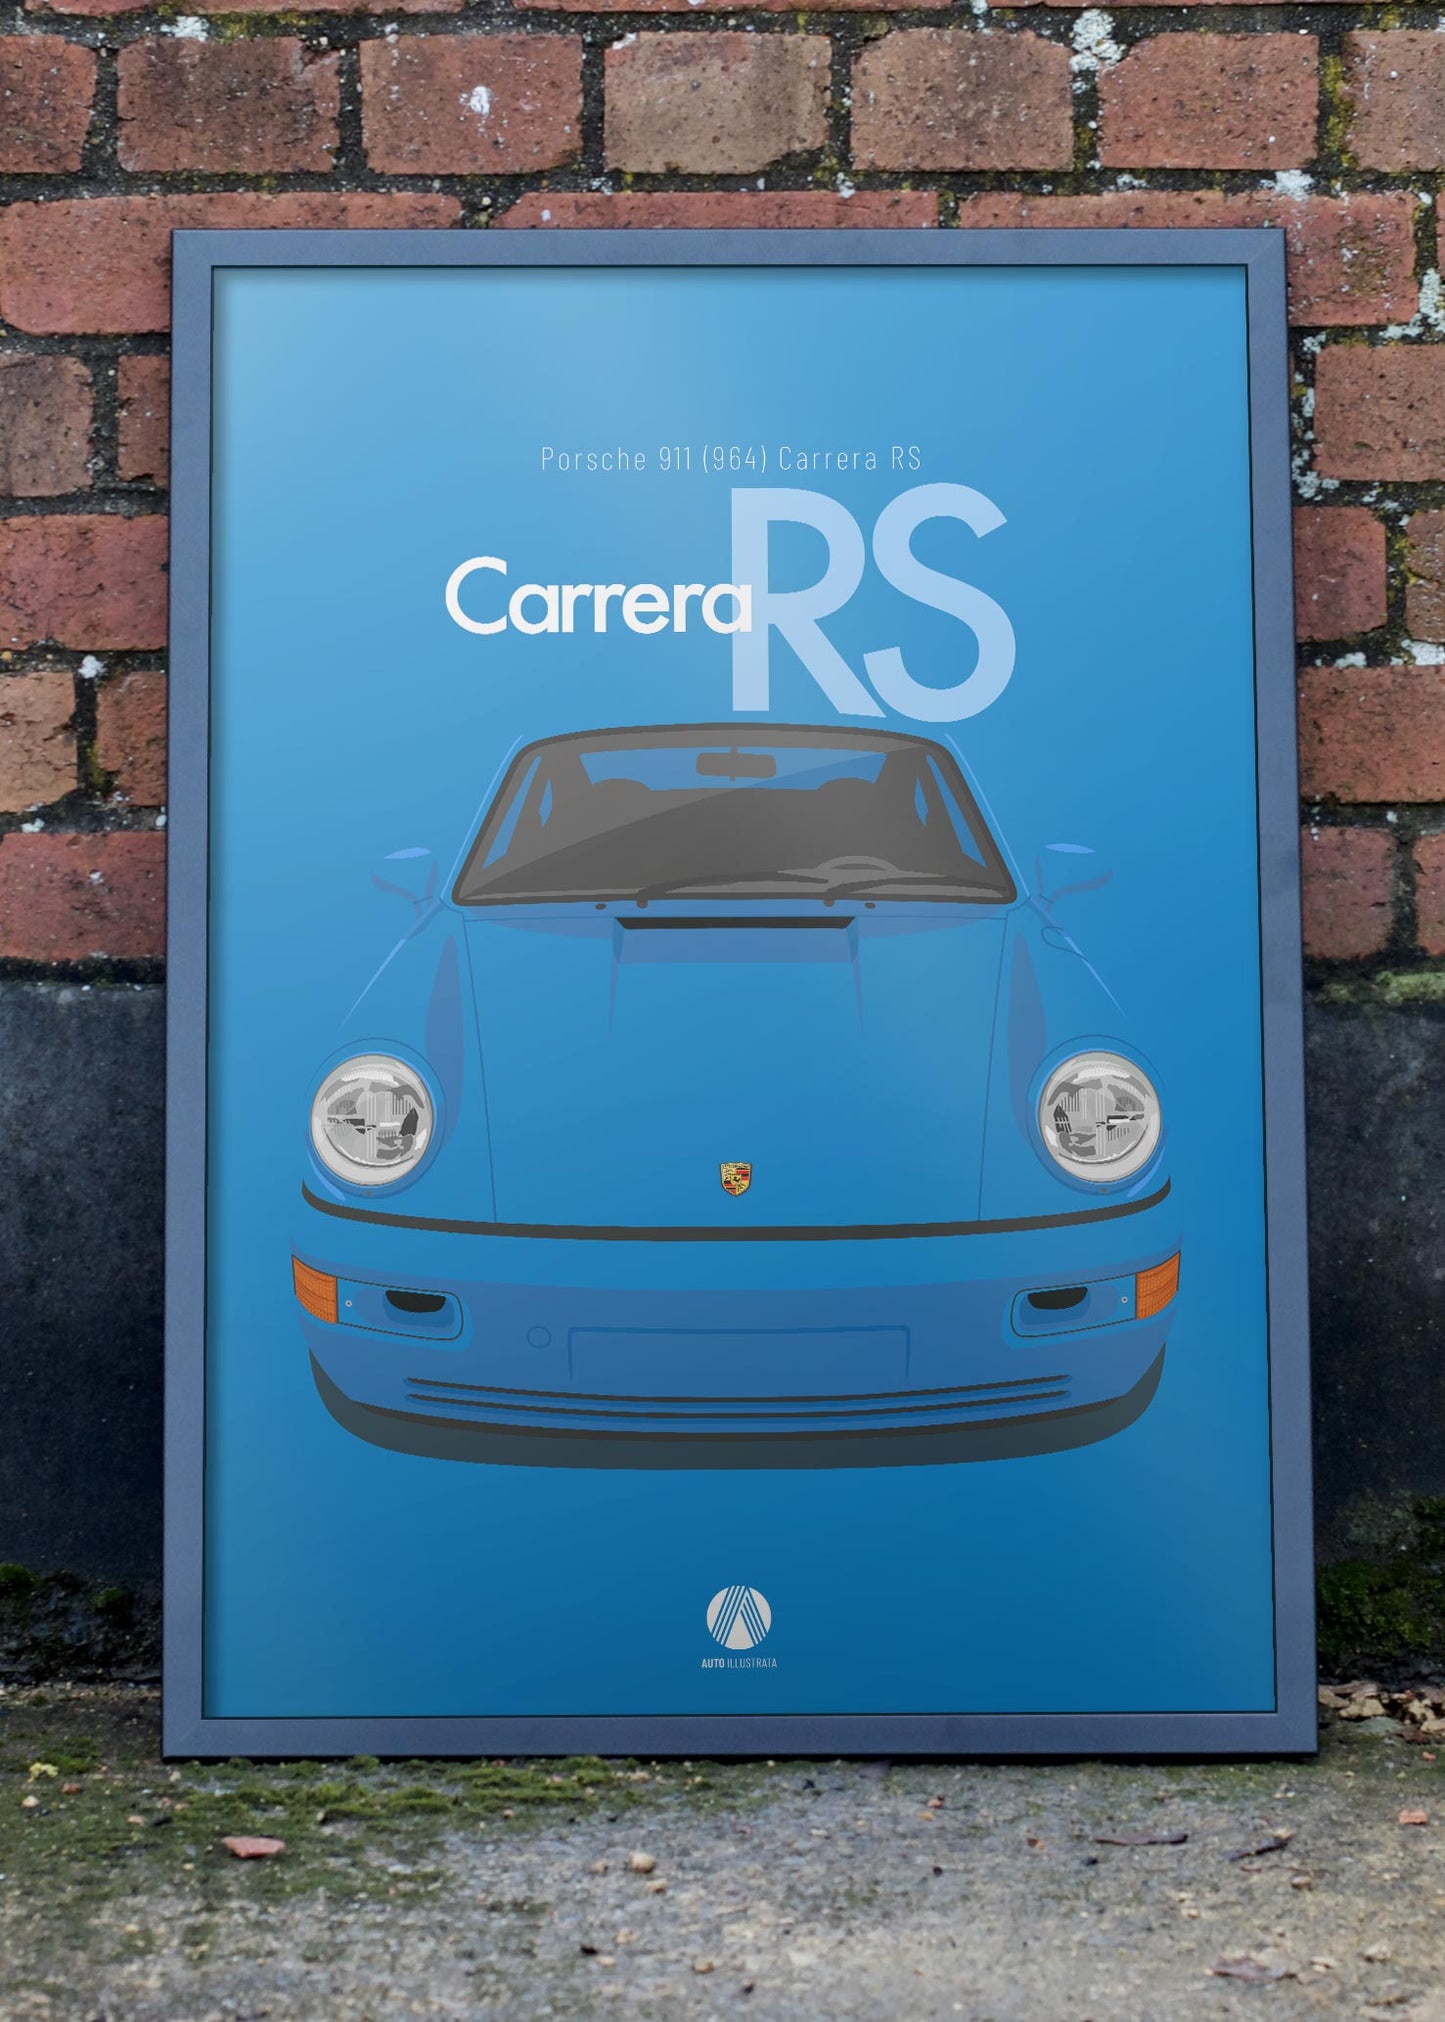 1992 Porsche 911 (964) Carrera RS - Maritime Blue - poster print